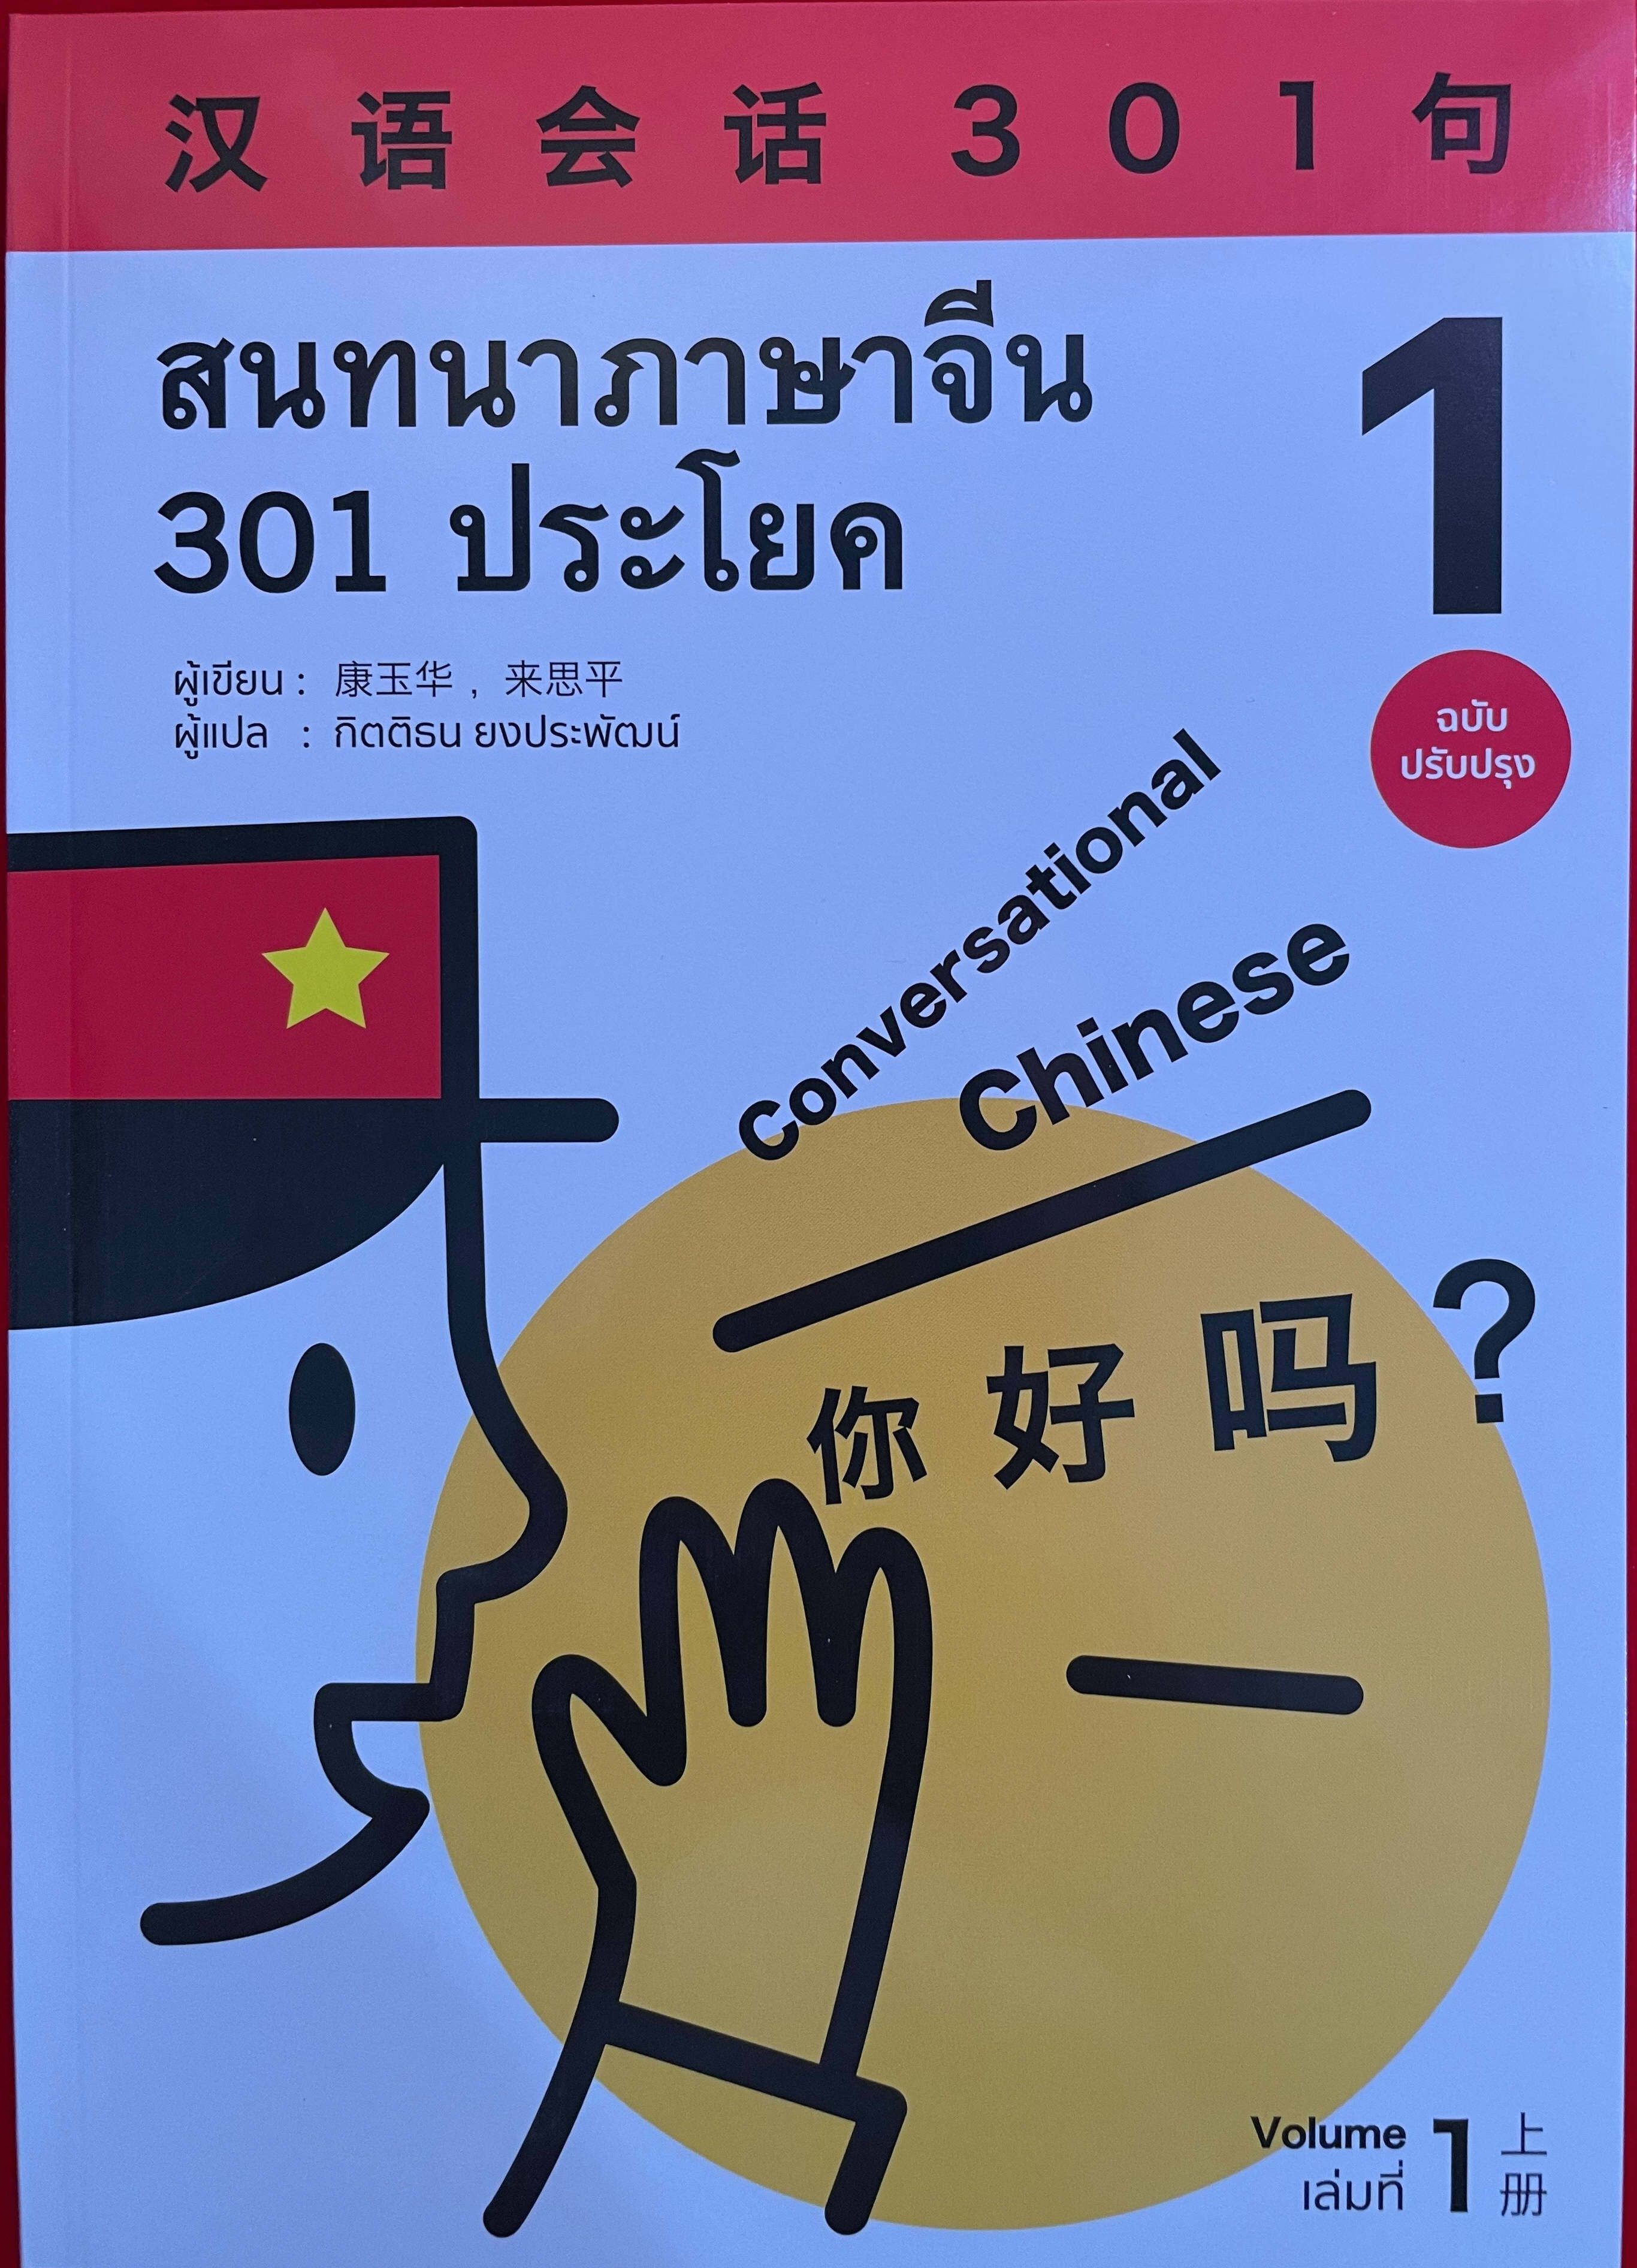 สนทนาภาษาจีน 301 ประโยค 汉语会话301句新版# ของแท้ 100% หนังสือภาษาจีน#（ฉบับ จีน-ไทย）สแกน  Qr Code เพื่อรับไฟล์เฉลยPdf | Lazada.Co.Th